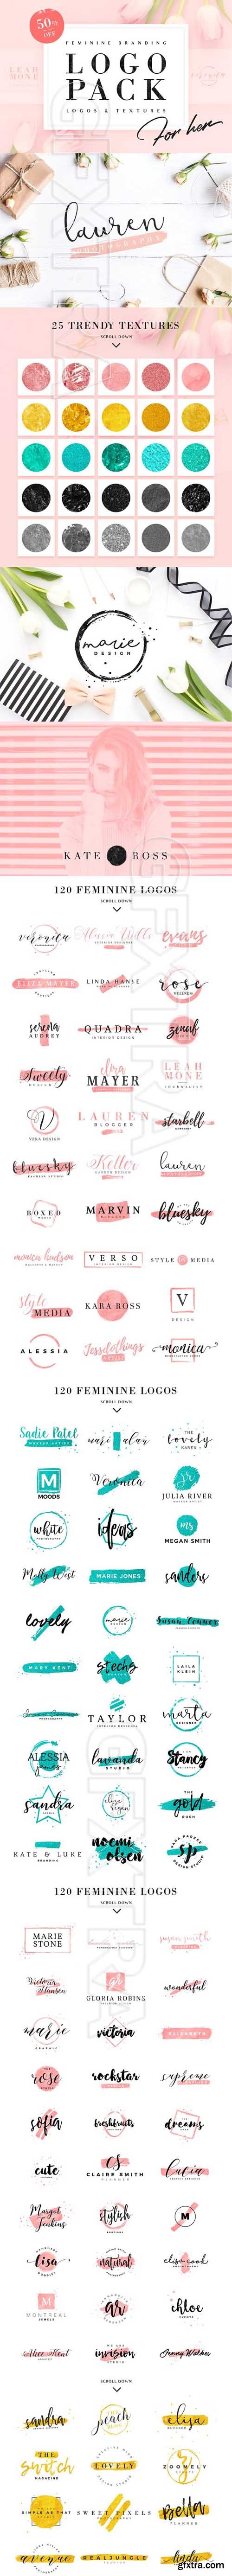 CM - 120 Feminine Branding Logos 1388194